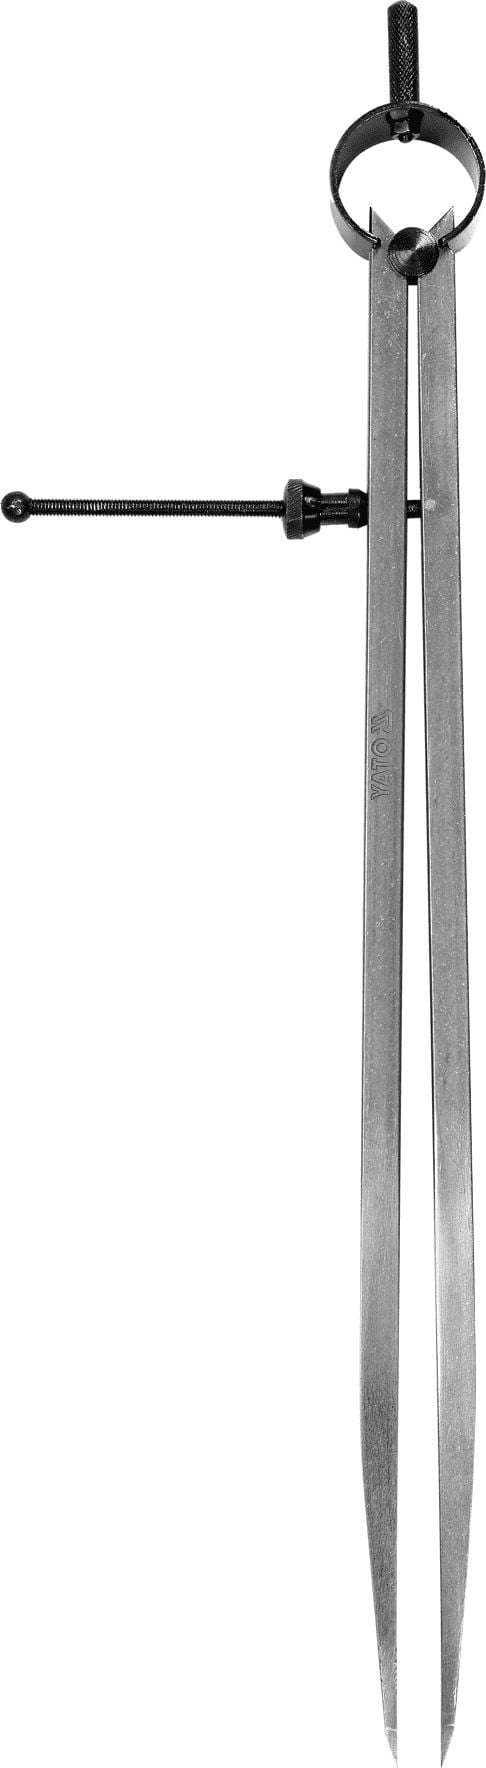 Compas pentru trasat Yato YT-72108, pentru metal si lemn, 300mm